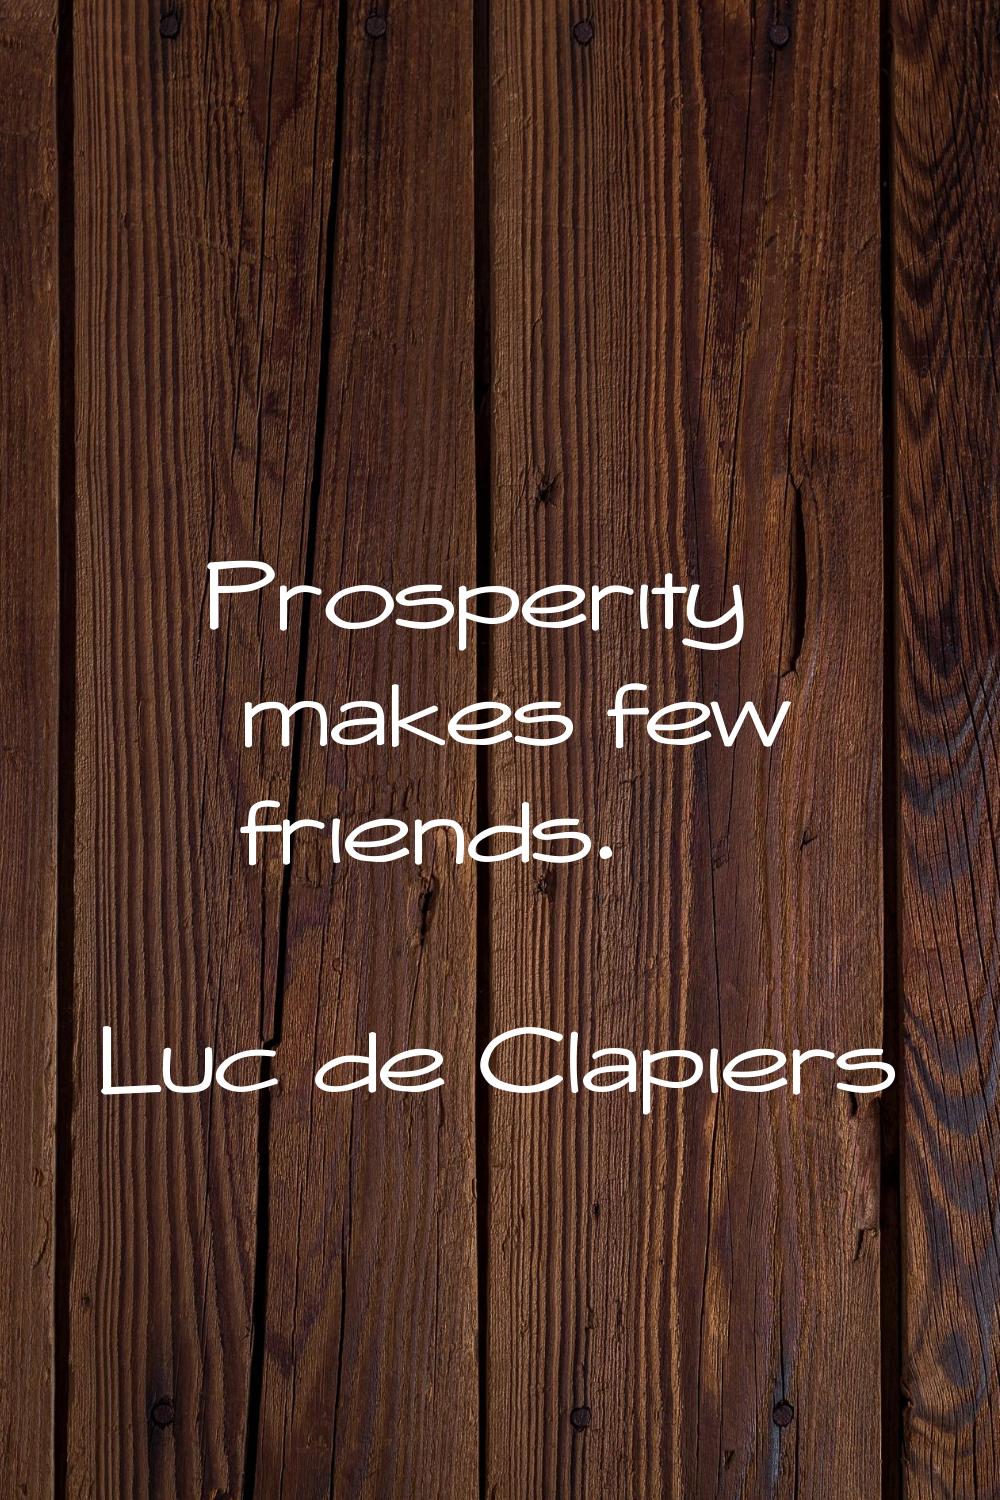 Prosperity makes few friends.